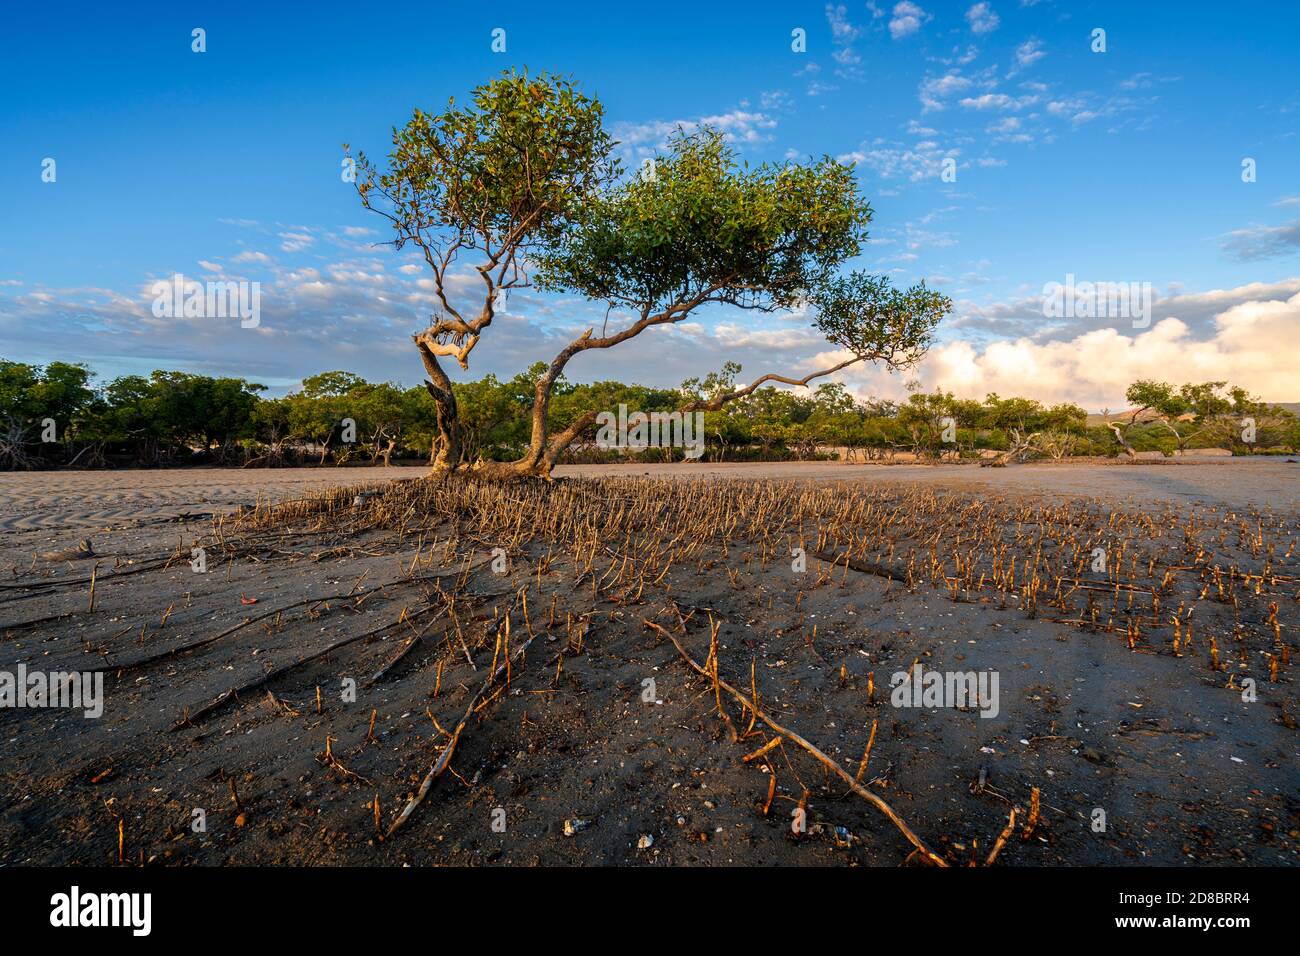 Pneumatophores oder Luftwurzeln, die bei Ebbe aus dem Watt um graue Mangroven aufsteigen, Clairview Central Queensland, Australien Stockfoto